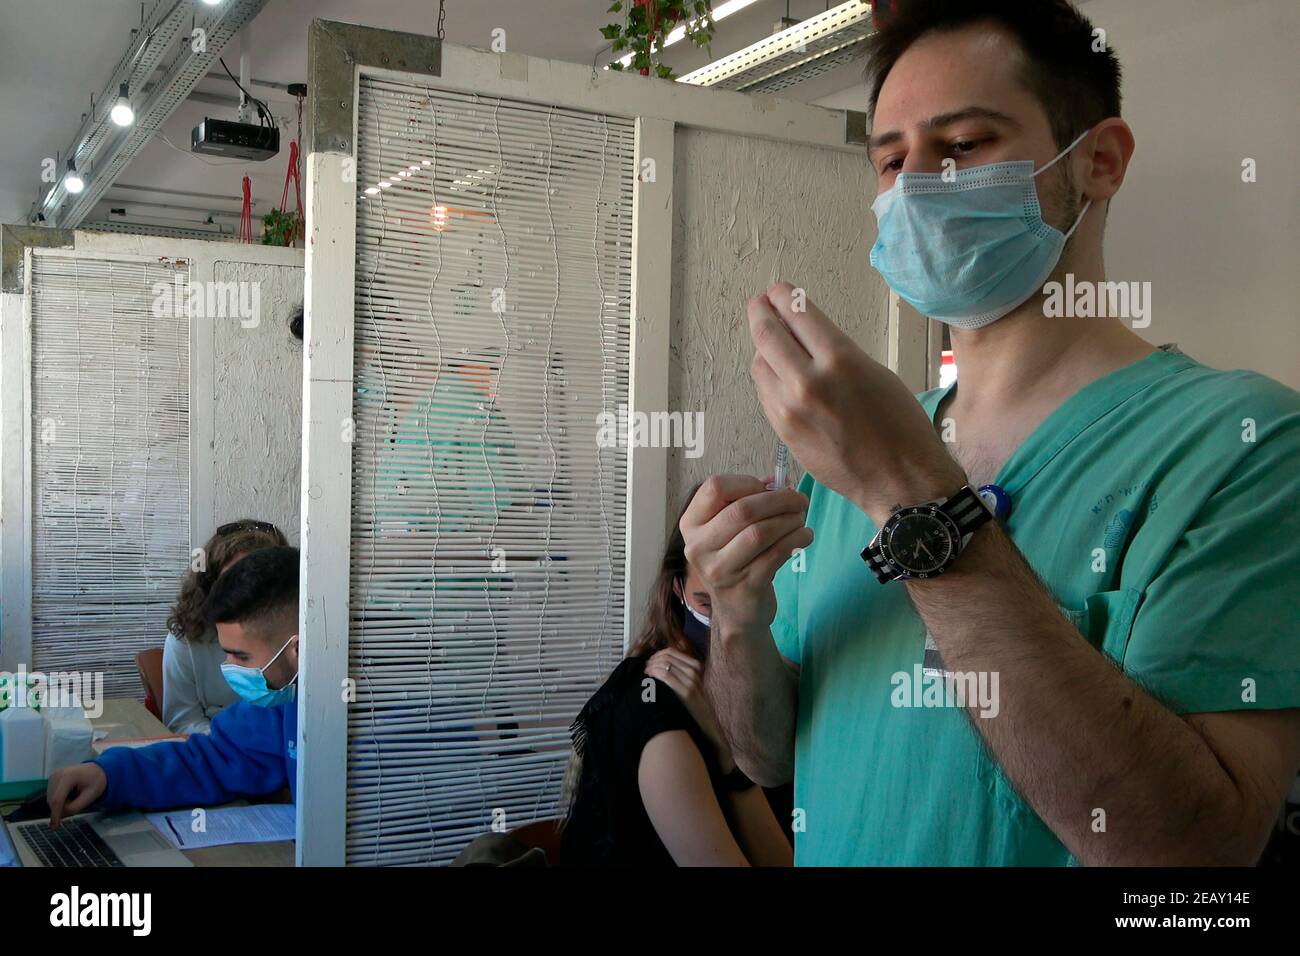 Am 09. Februar 2021, in Tel Aviv, Israel, verabreicht ein Arzt den Impfstoff Pfizer-BioNTech COVID-19 an einen Ausländer im Sourasky Medical Center für ausländische Staatsangehörige. Anderthalb Monate nachdem Israel seine weltweit führende Impfkampagne gegen das Coronavirus gestartet hatte, begannen die Stadtverwaltung Tel Aviv-Yafo und das Sourasky Medical Center (Ichilov Hospital) damit, den ausländischen Staatsangehörigen der Stadt, von denen viele nicht dokumentierte Asylbewerber sind, kostenlos Pfizer-BioNTech-Coronavirus-Impfstoffe zu verabreichen. Stockfoto